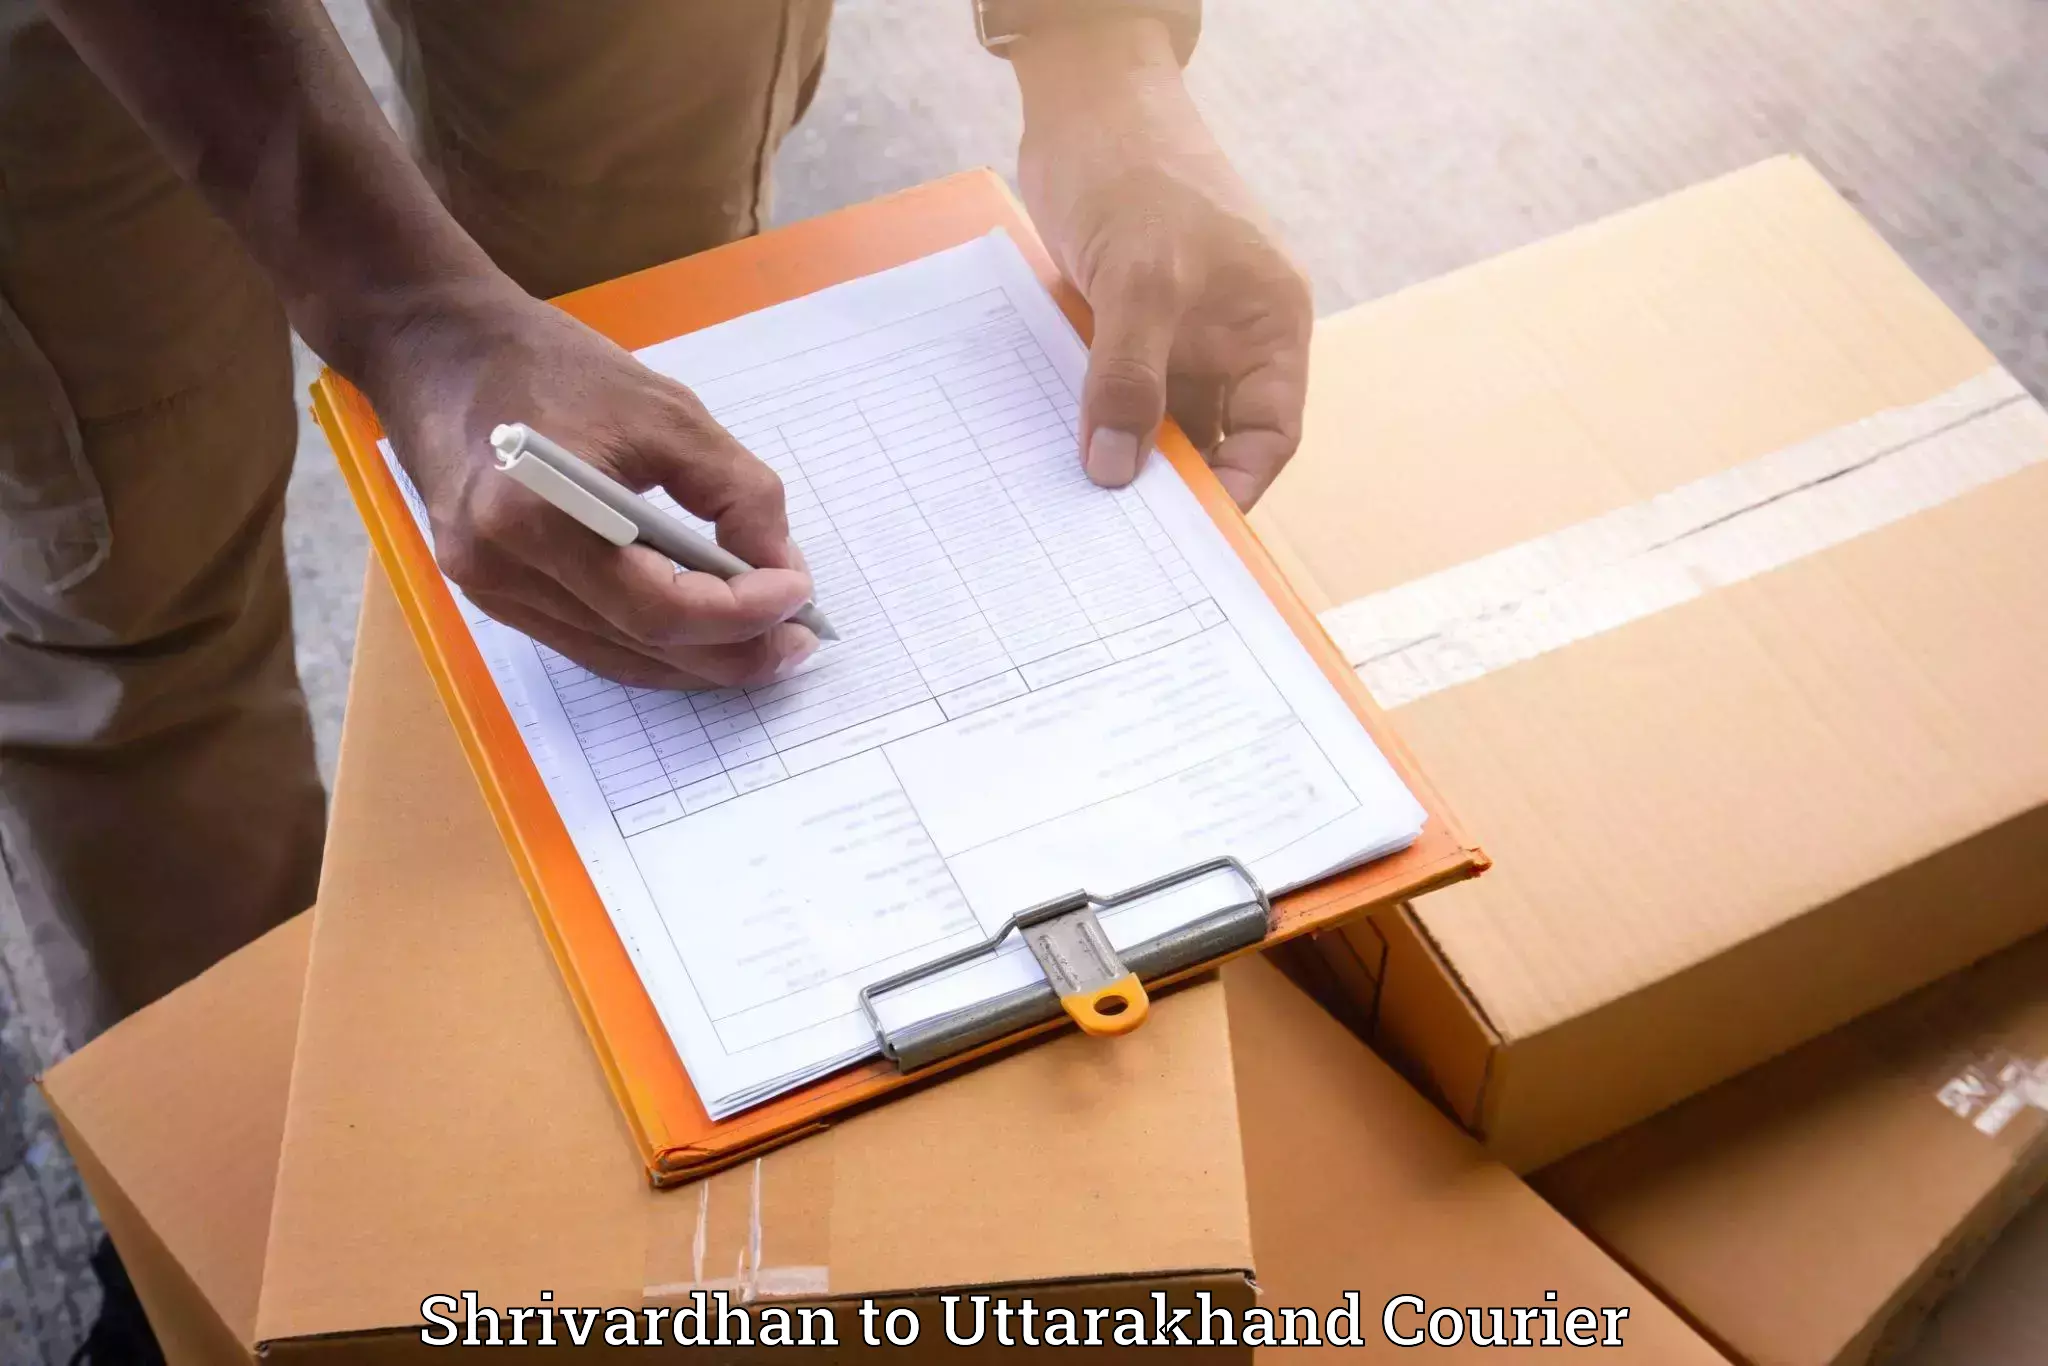 Furniture moving plans Shrivardhan to Uttarakhand